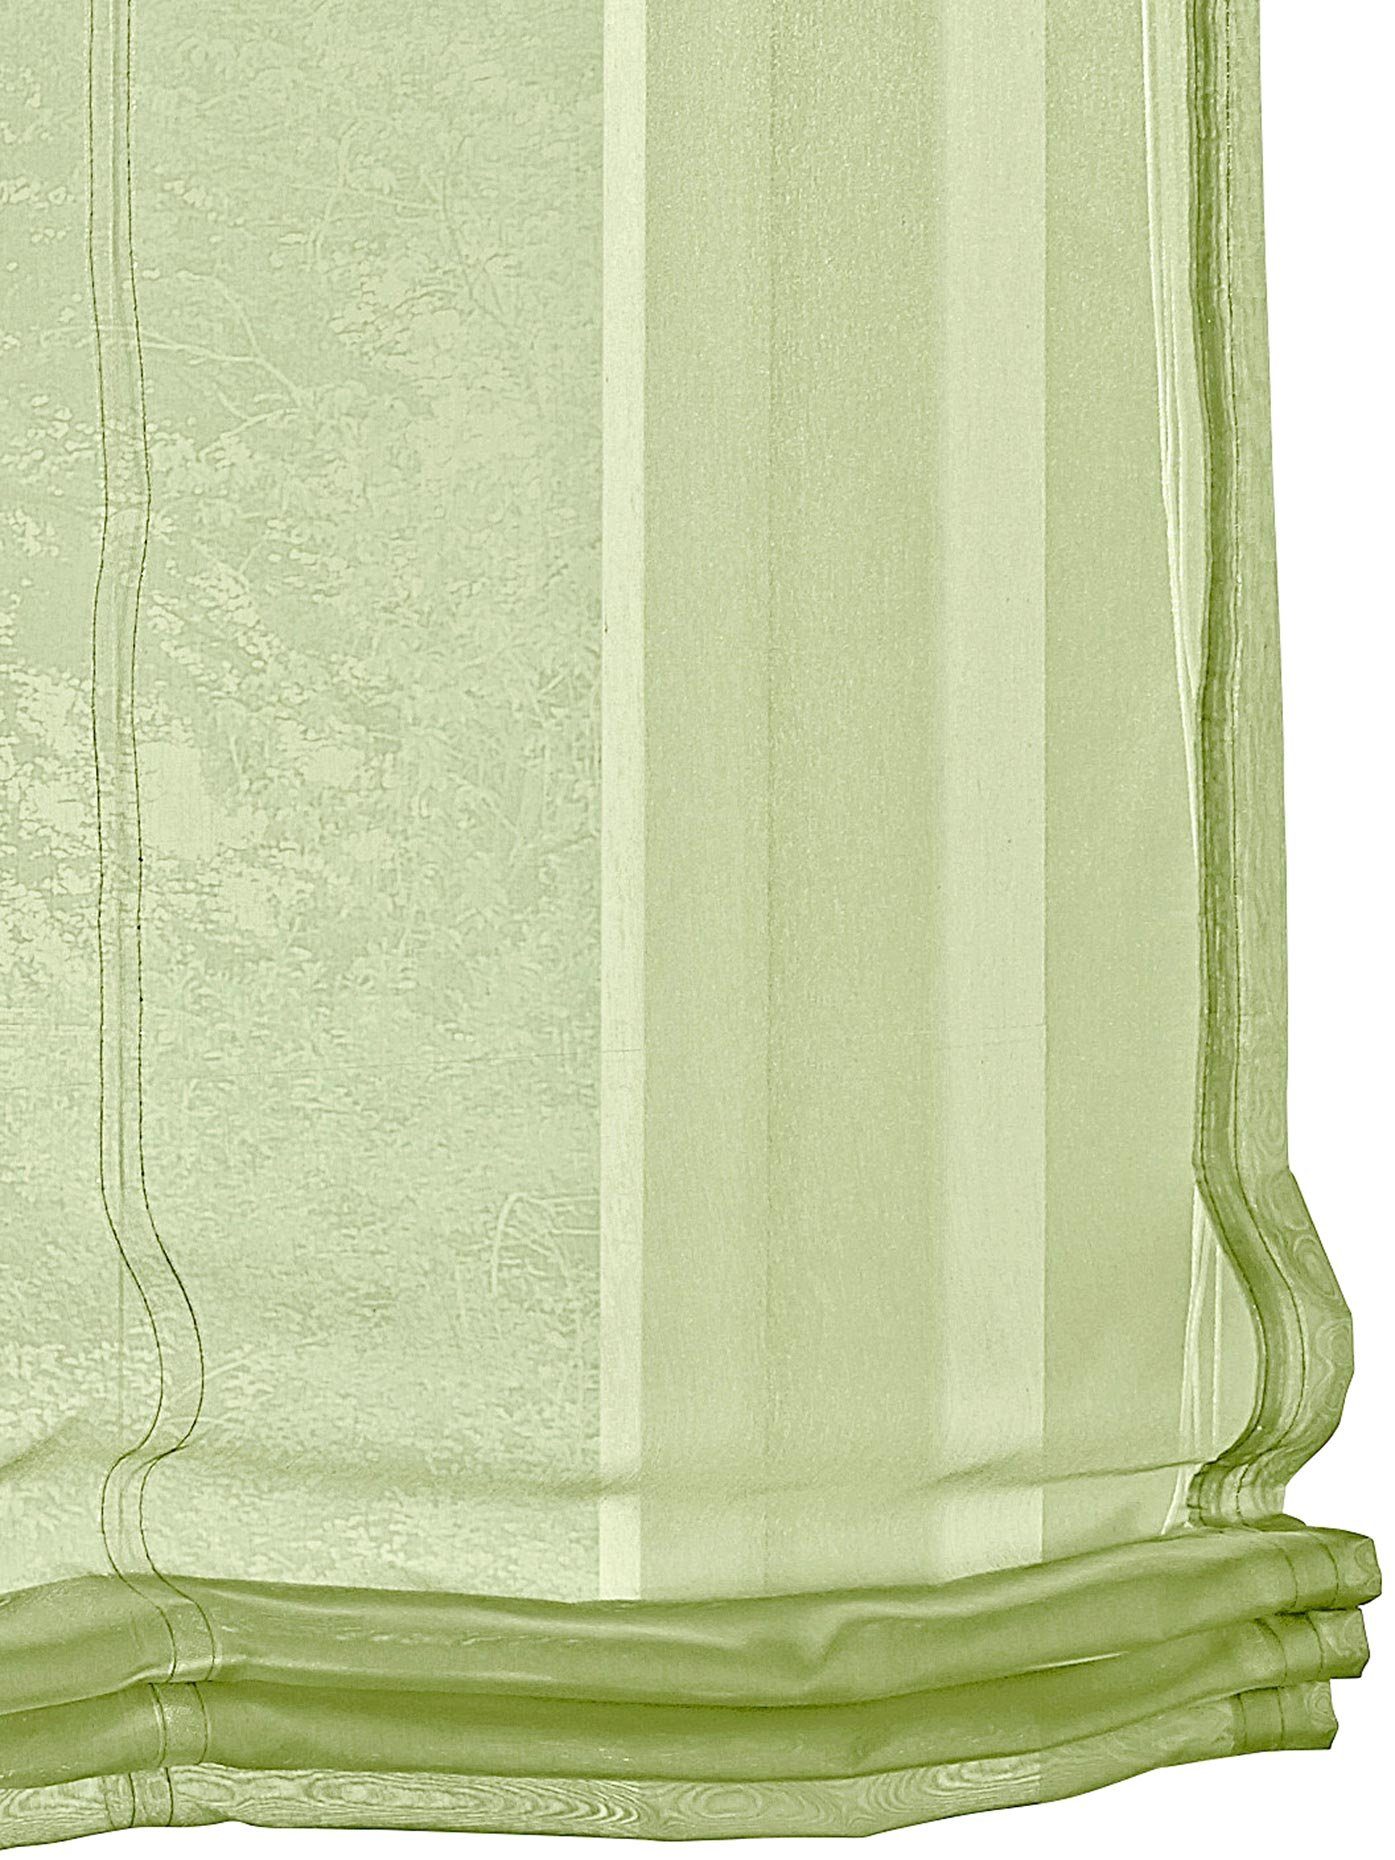 Raffrollos:HxB 140/60 heine home Raffrollo in Scherli-Qualität Halbtransparent 100% Polyester weiß Ösen